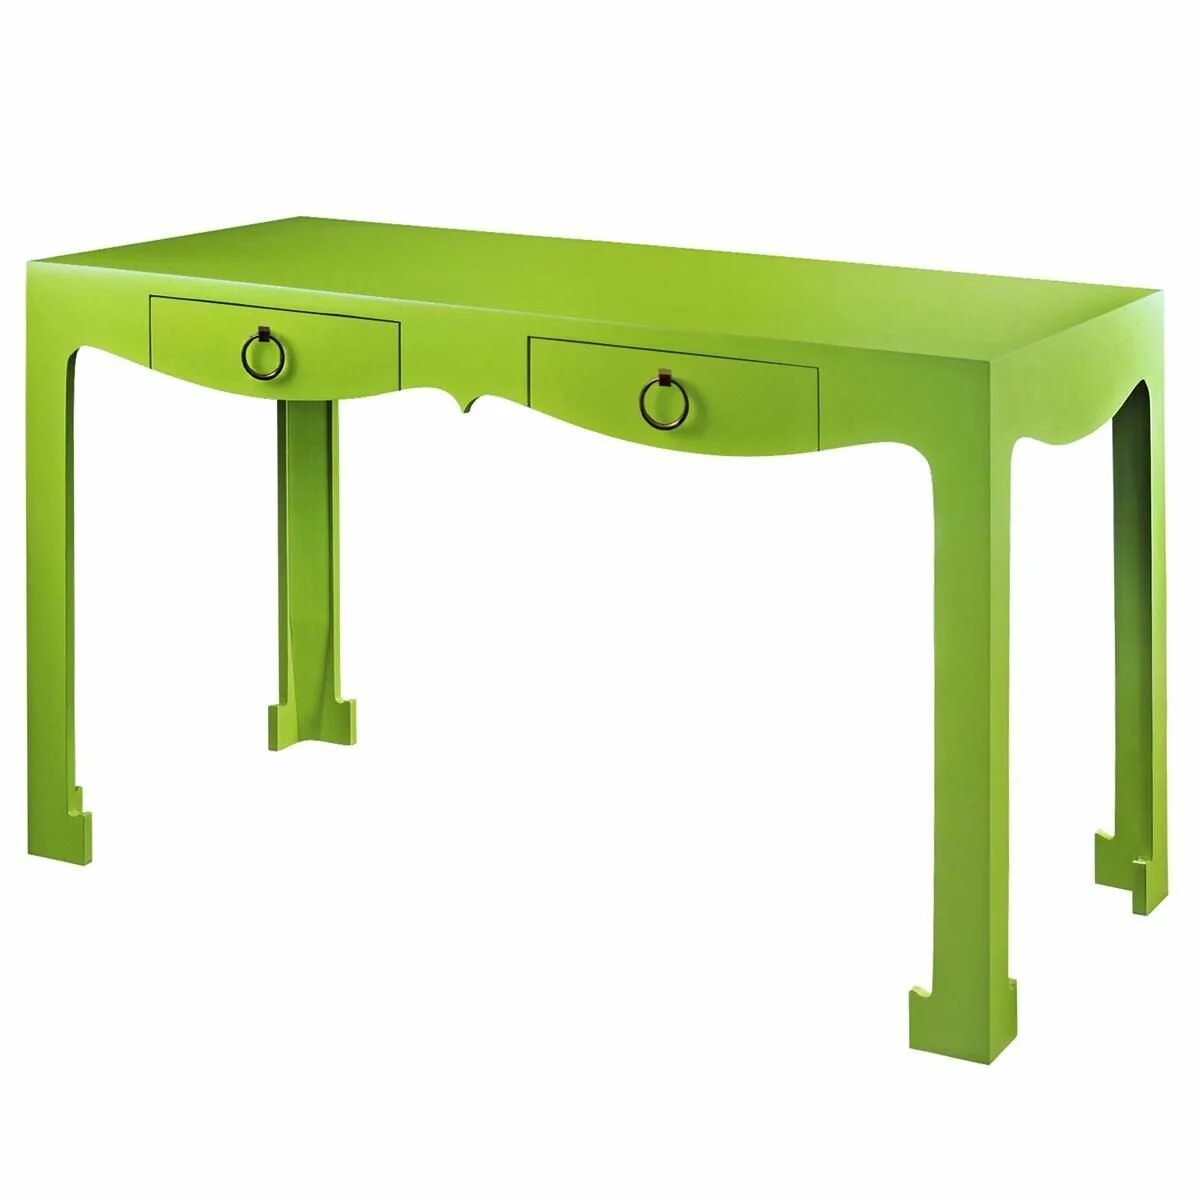 Зеленый стол. Стол письменный зеленый. Салатовый стол. Письменный стол в зеленом цвете.